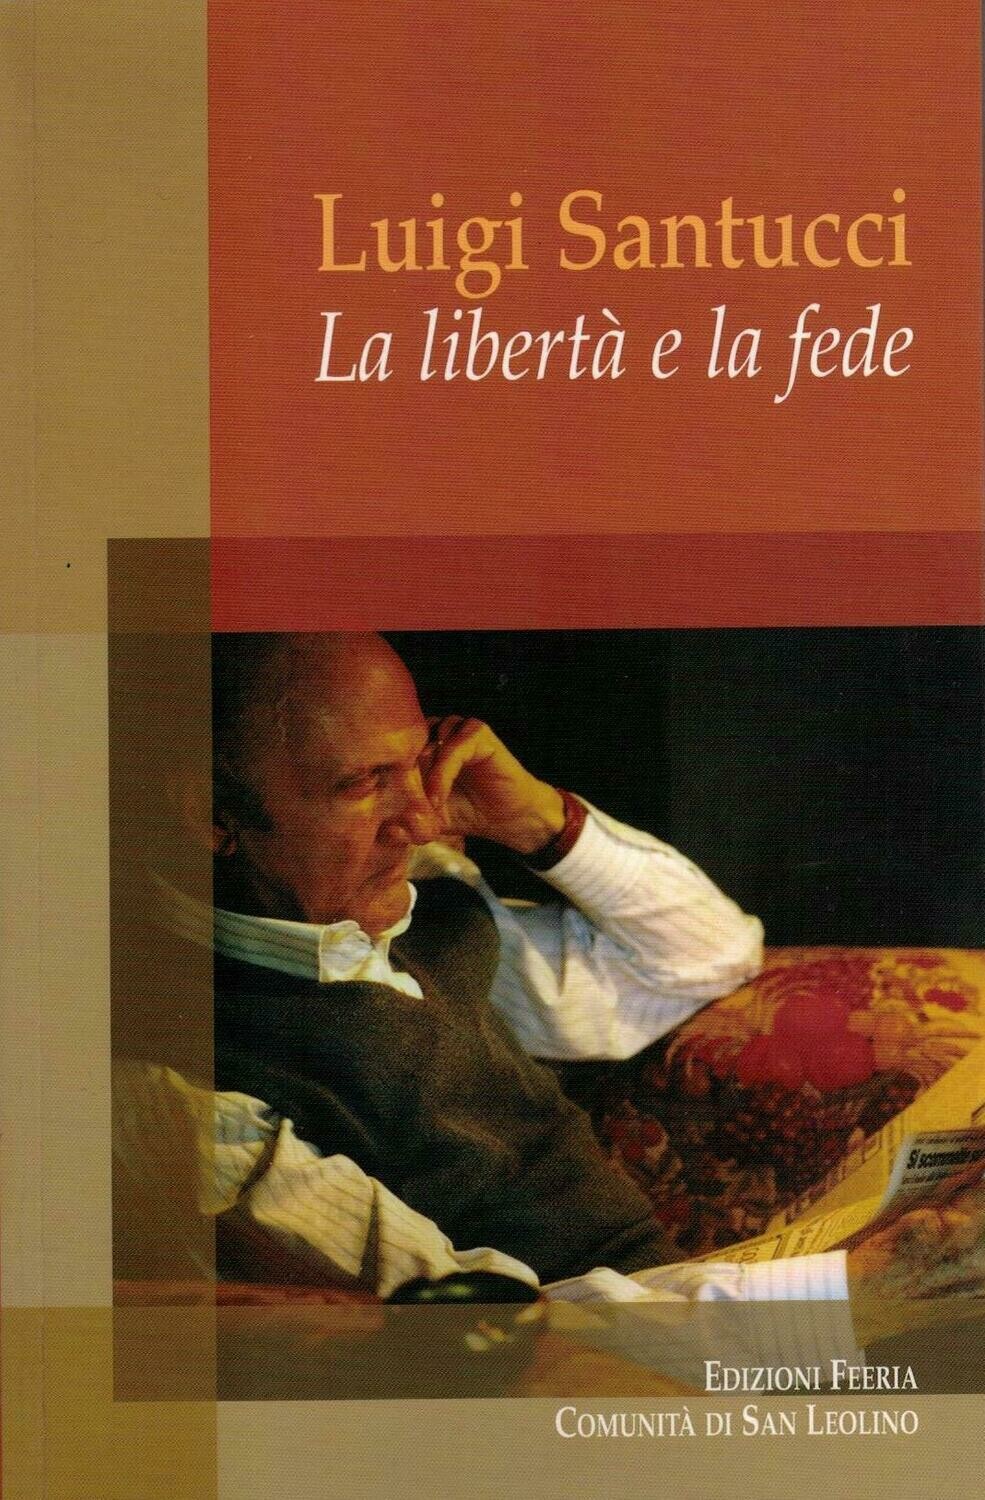 Luigi Santucci - La libertà e la fede (Autori vari)